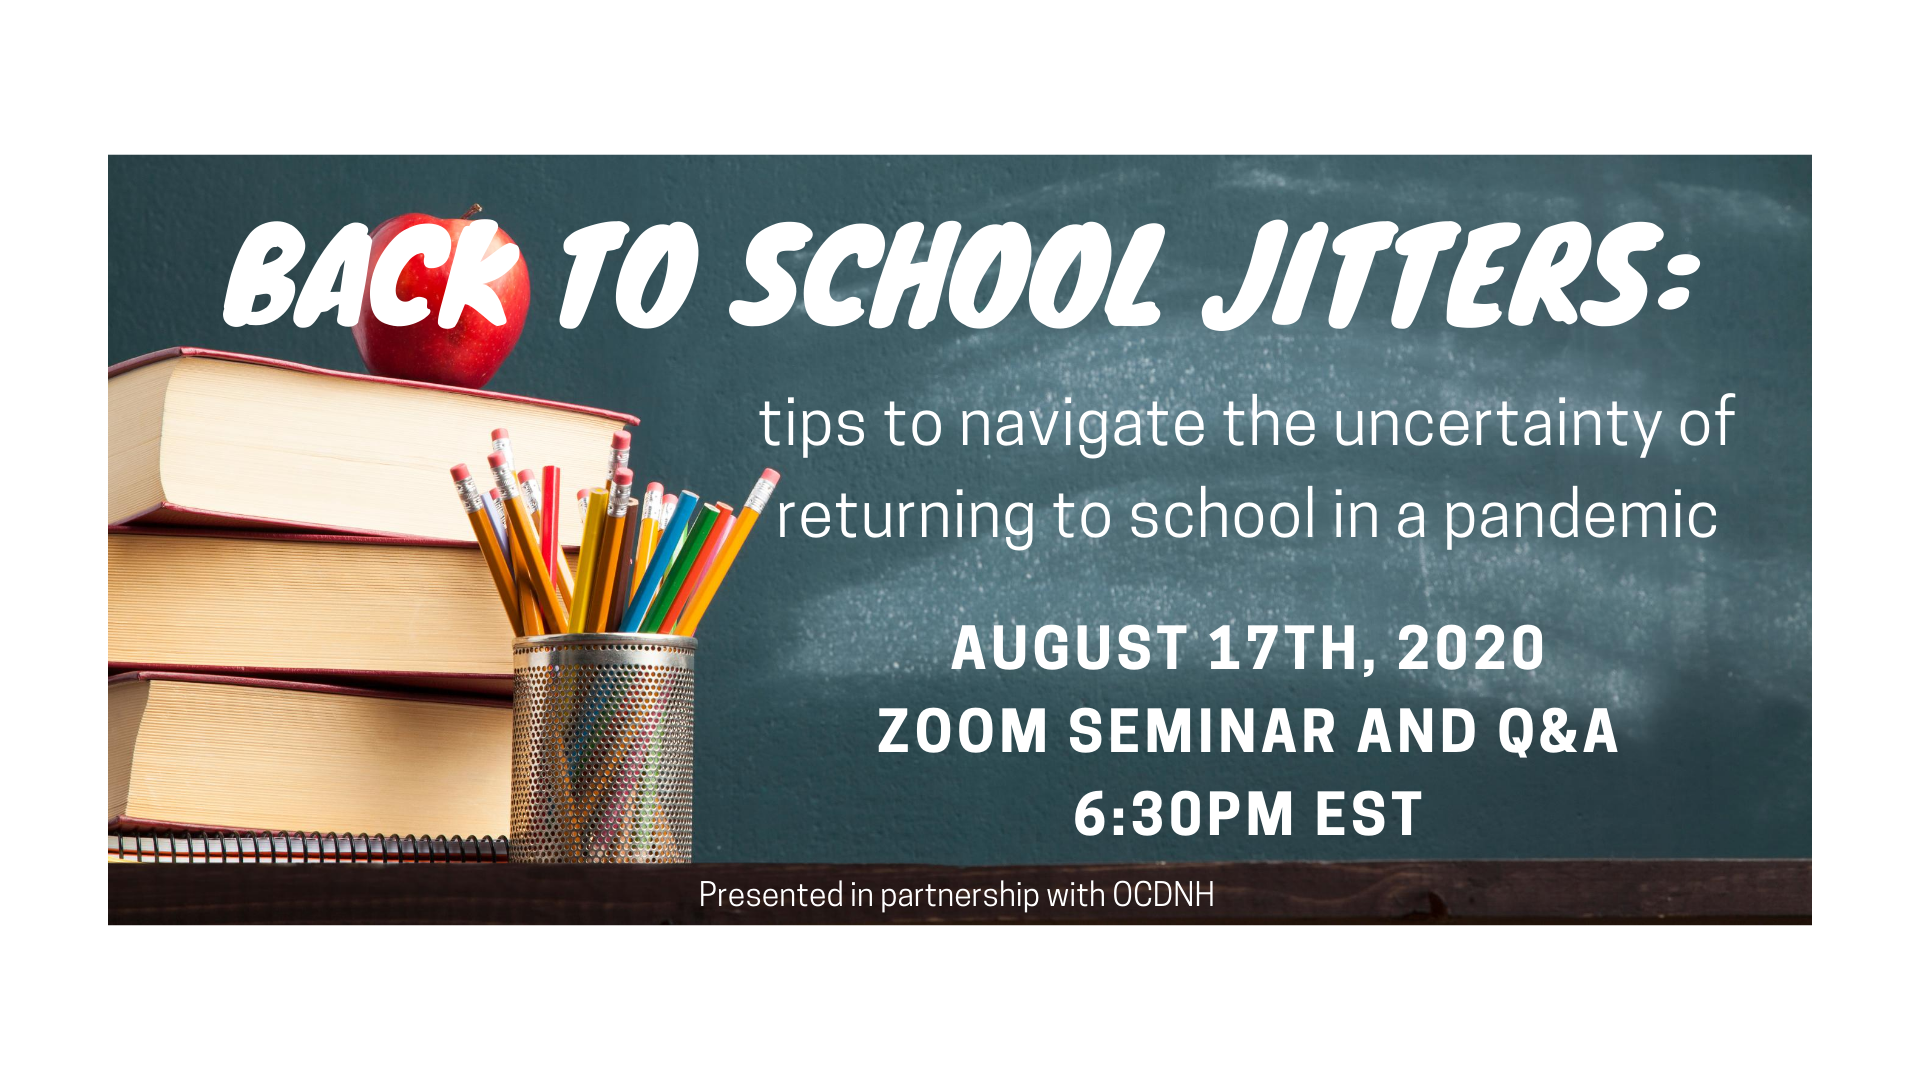 Back to School Jitters Webinar August 17th 6:30p